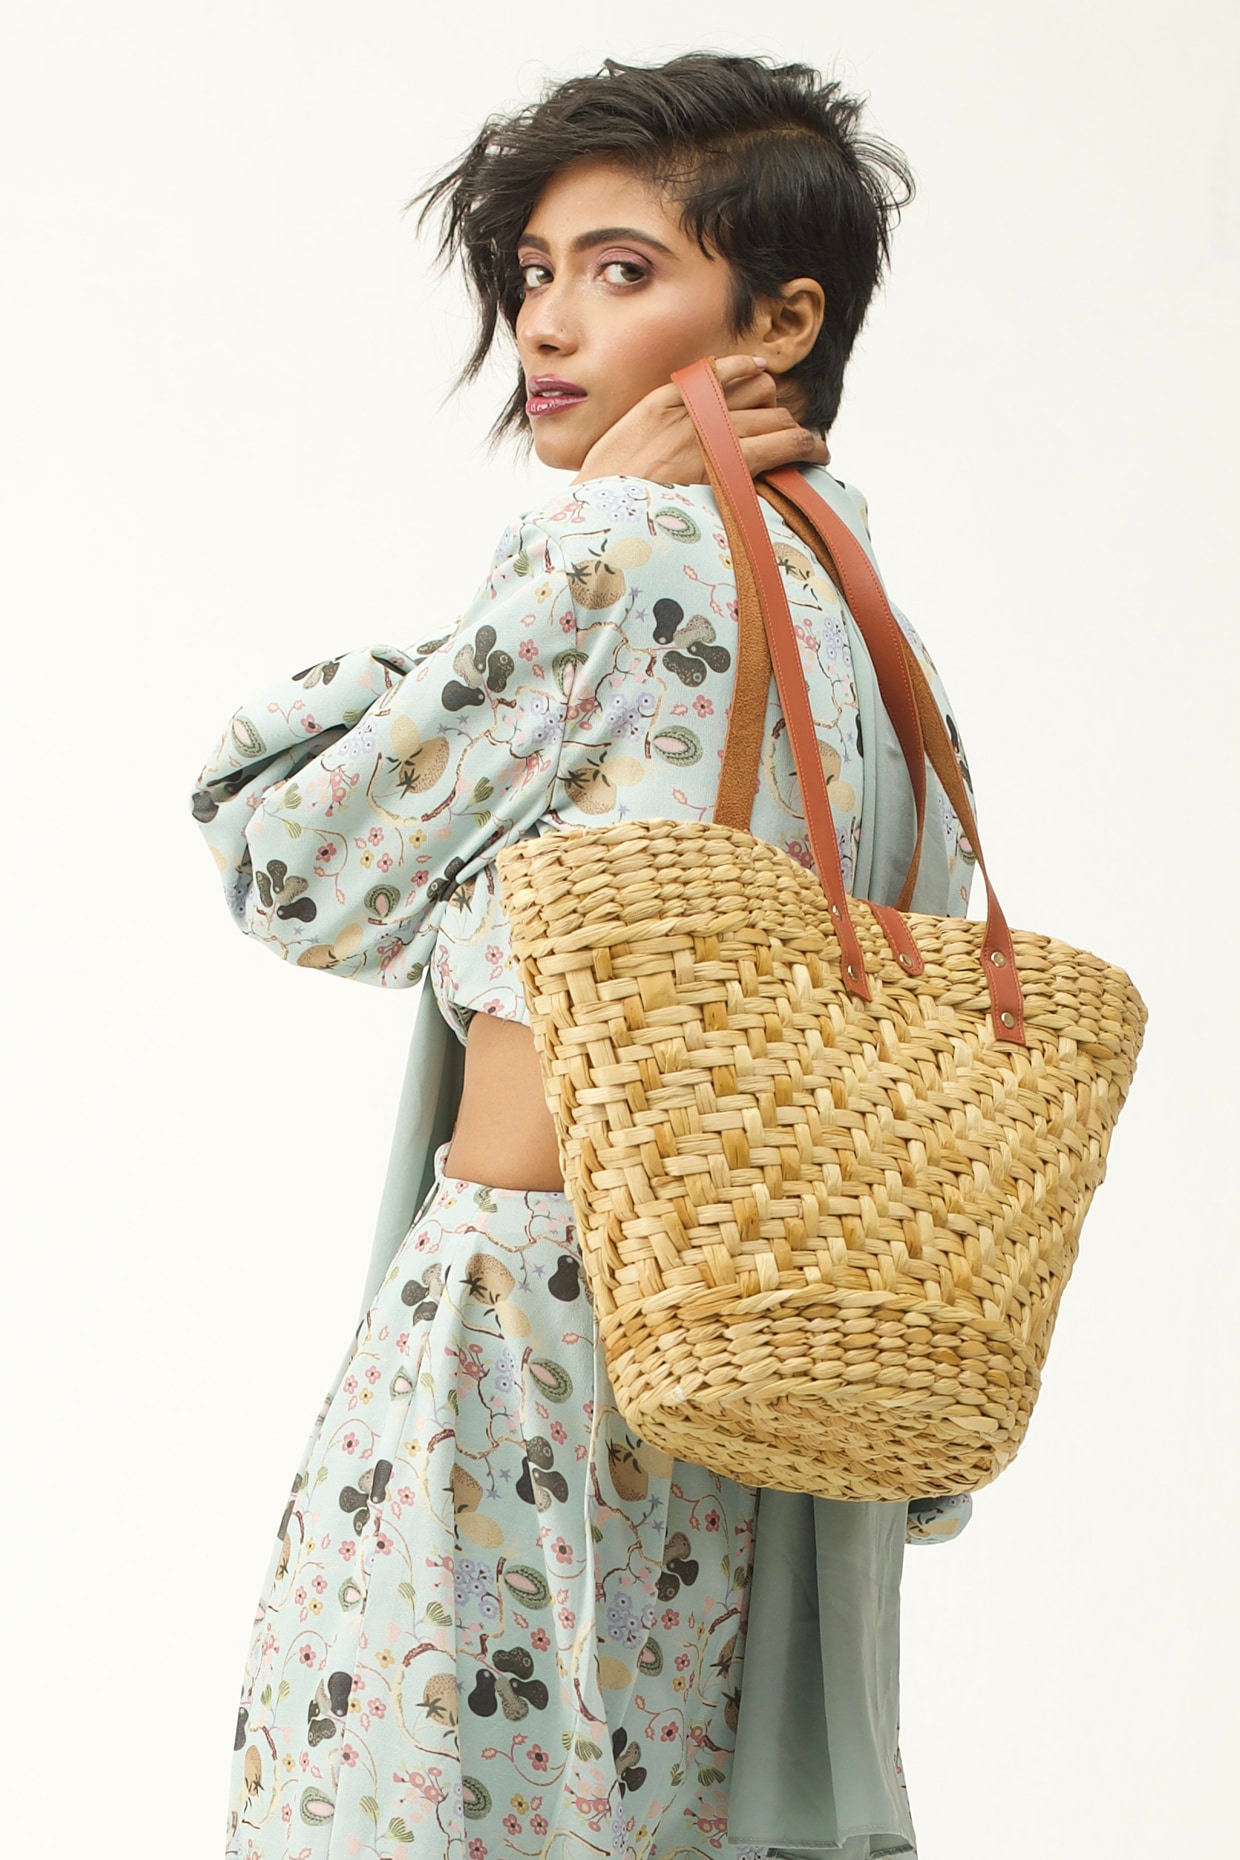 Kauna reed – Handmade Eco friendly 14” Handbag – Natural Grass – Glossy  touch | eBay